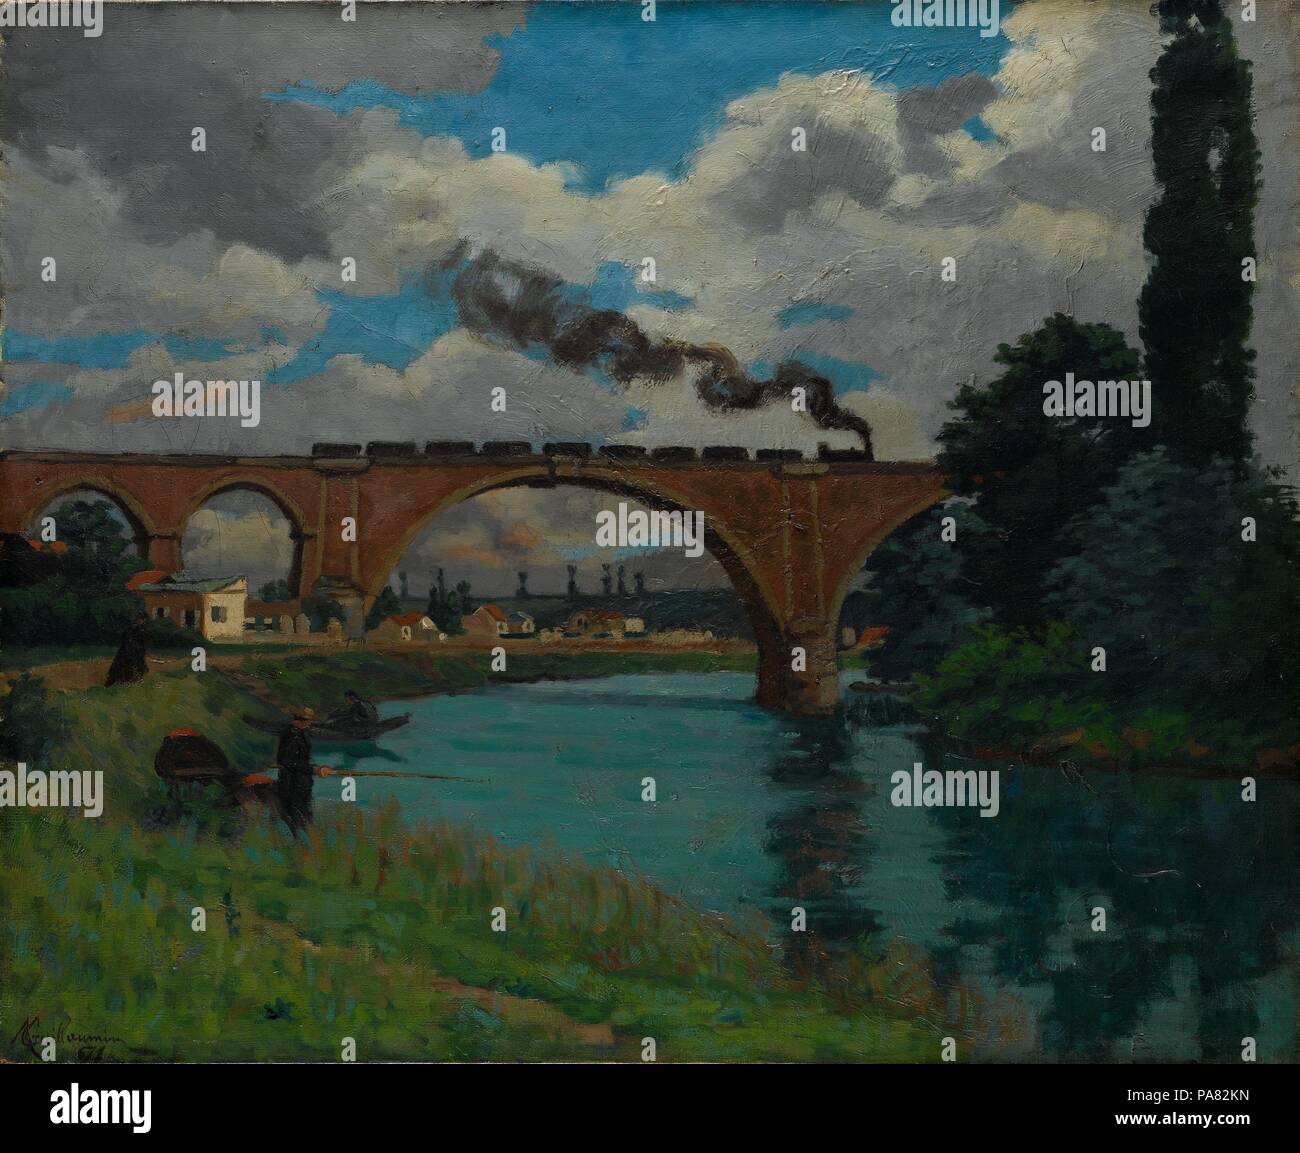 Pont ferroviaire qui traverse la Marne à Joinville. Artiste : Armand Guillaumin (Français, 1841-1927 Paris Orly). Dimensions : 23 1/8 x 28 3/8 in. (58,7 x 72,1 cm). Date : 1871-1875. Armand Guillaumin est peut-être moins connu que ses illustres amis Paul Cézanne et Camille Pissarro, mais en effet, il était un peintre paysagiste de talent, en particulier dans les années 1870. Guillaumin a développé un intérêt pour les ponts et viaducs en tant qu'employé de la gare Paris-Orléans, et plus tard, le ministère des routes et des ponts. Ce beau paysage lyrique a été peint dans la haute vallée de la Marne, dans le nord-est de Franc Banque D'Images